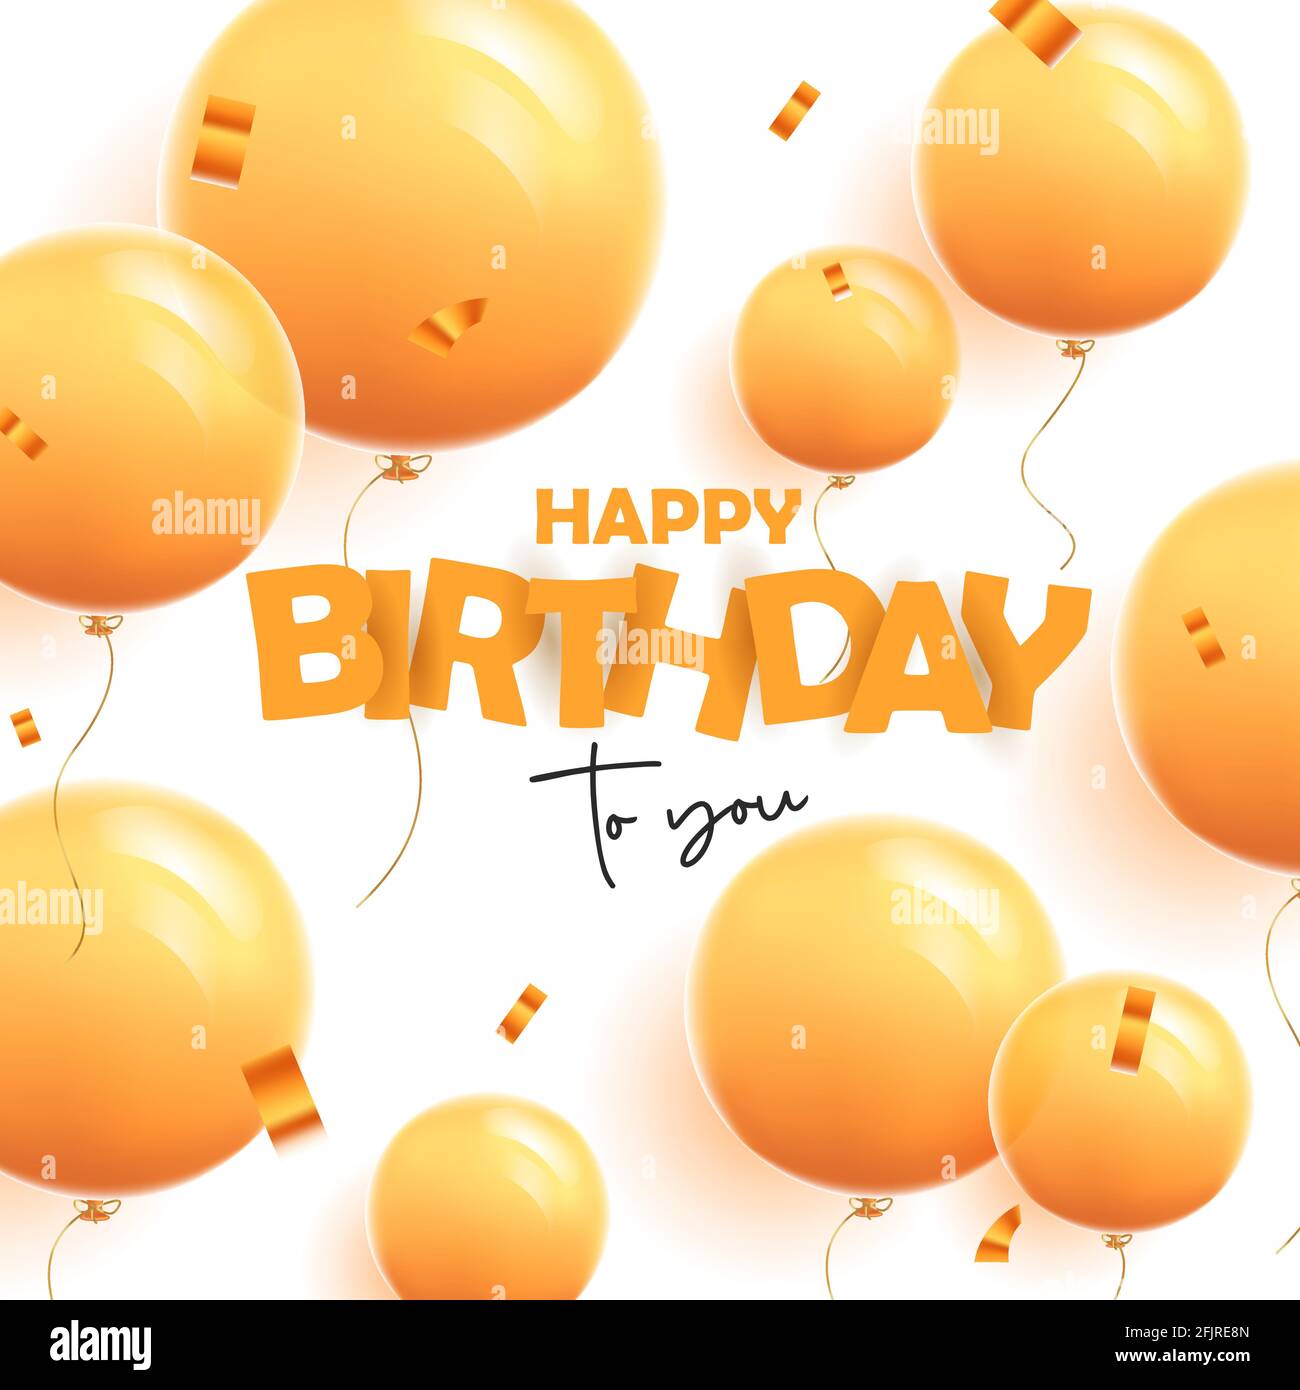 Buon banner di auguri di compleanno con moderni palloncini gialli monocromatici 3d su sfondo giallo con confetti, cartoon graphic Illustrazione Vettoriale